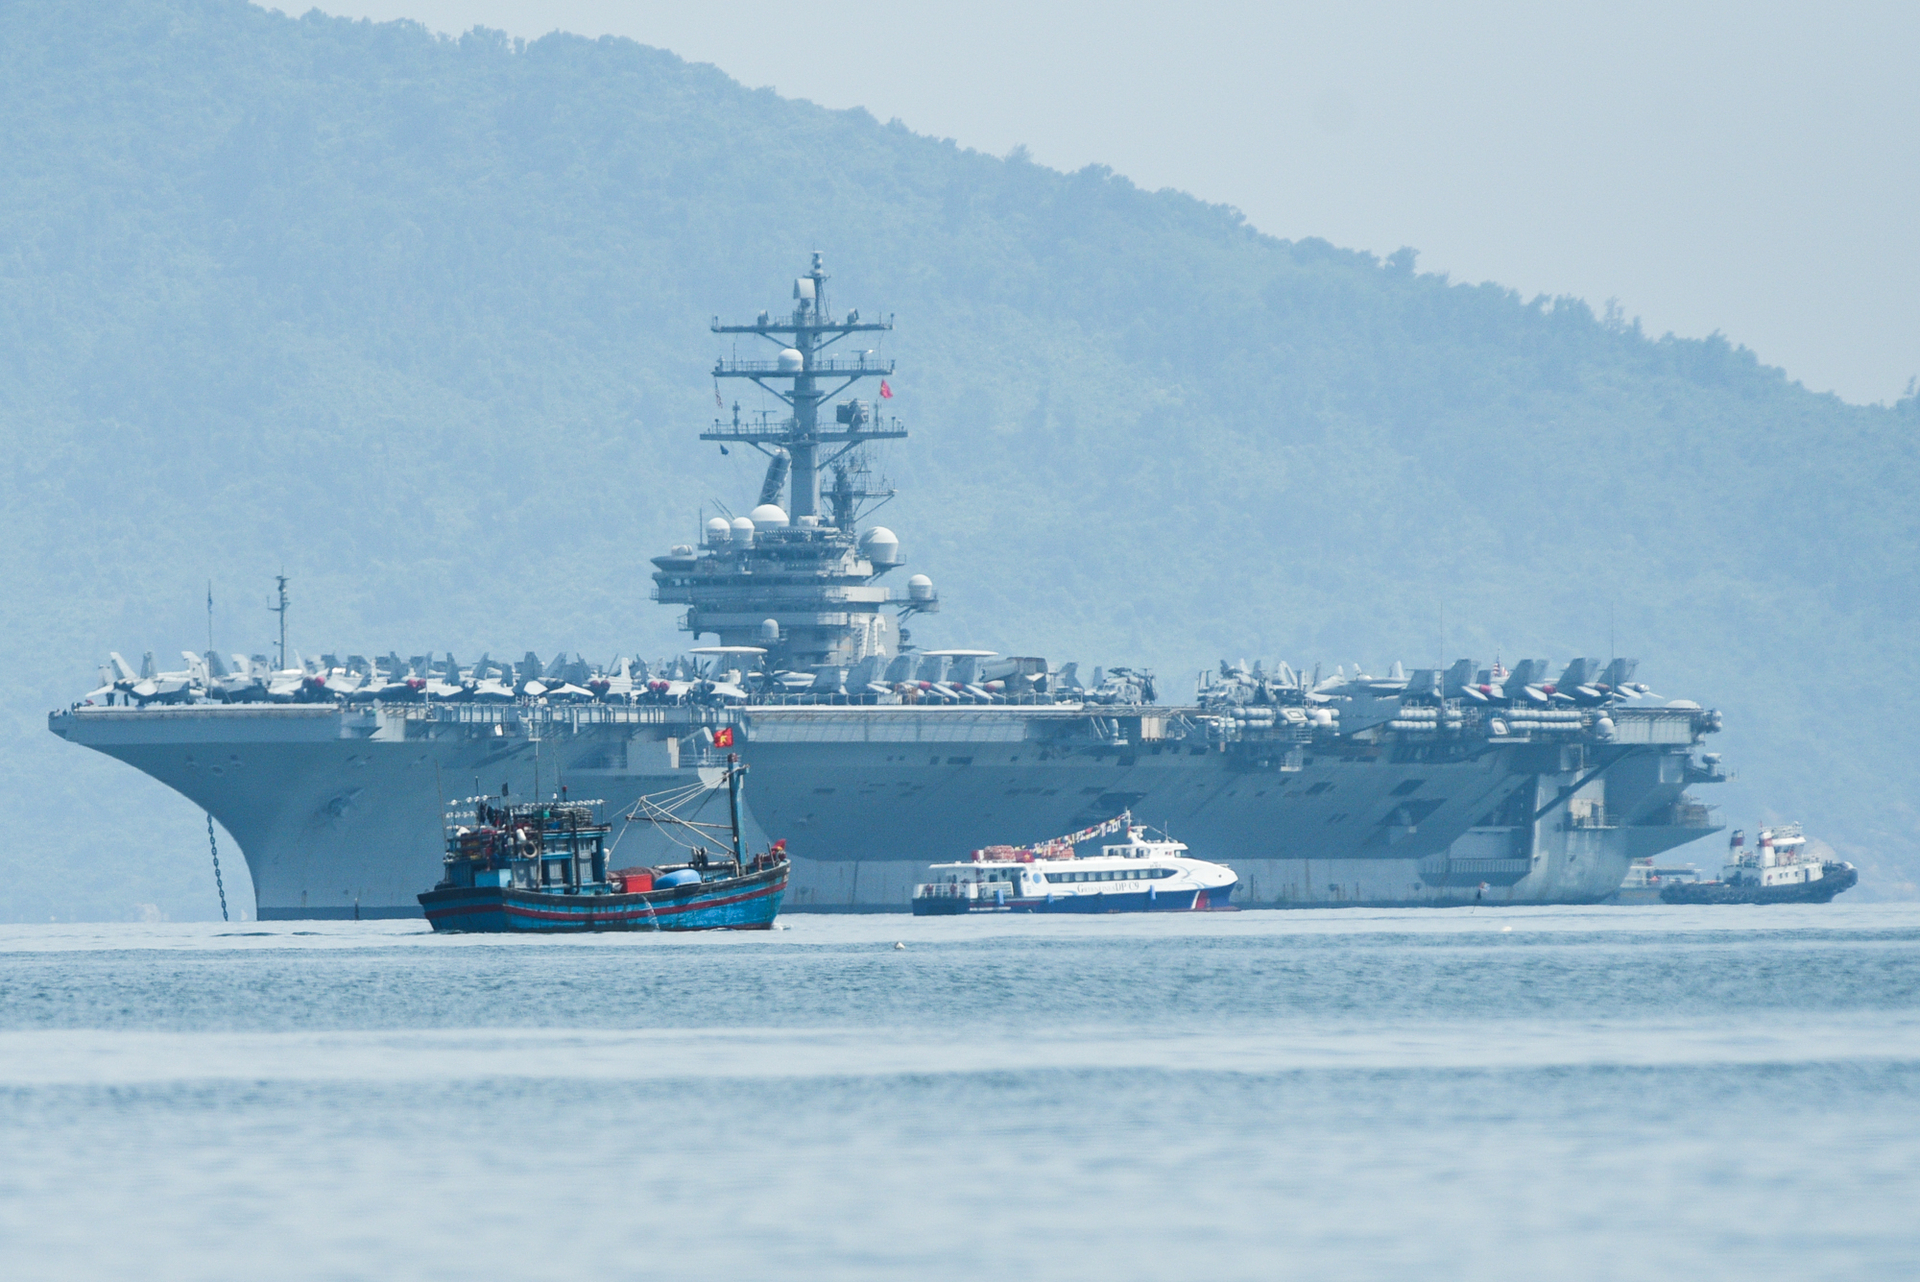 Tàu sân bay USS Ronald Reagan (CVN-76) neo trong cảng Tiên Sa, cách bờ khoảng hơn 1 hải lý. Ảnh: Tùng Đinh.